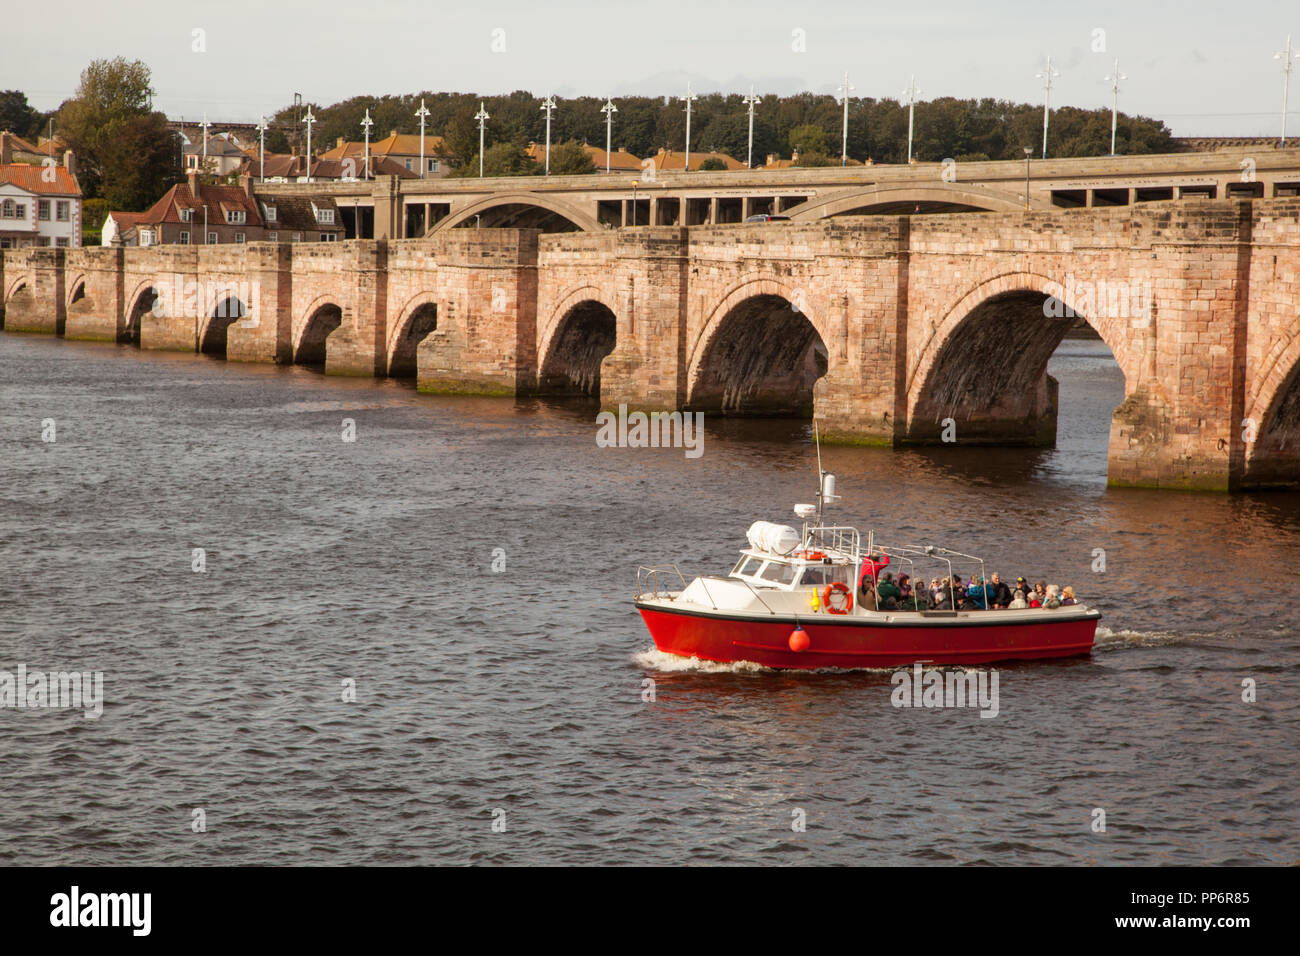 Voile plein de touristes et les touristes sur la rivière Tweed à Carnforth Lancashire England UK juste après avoir passé sous le pont vieux Banque D'Images